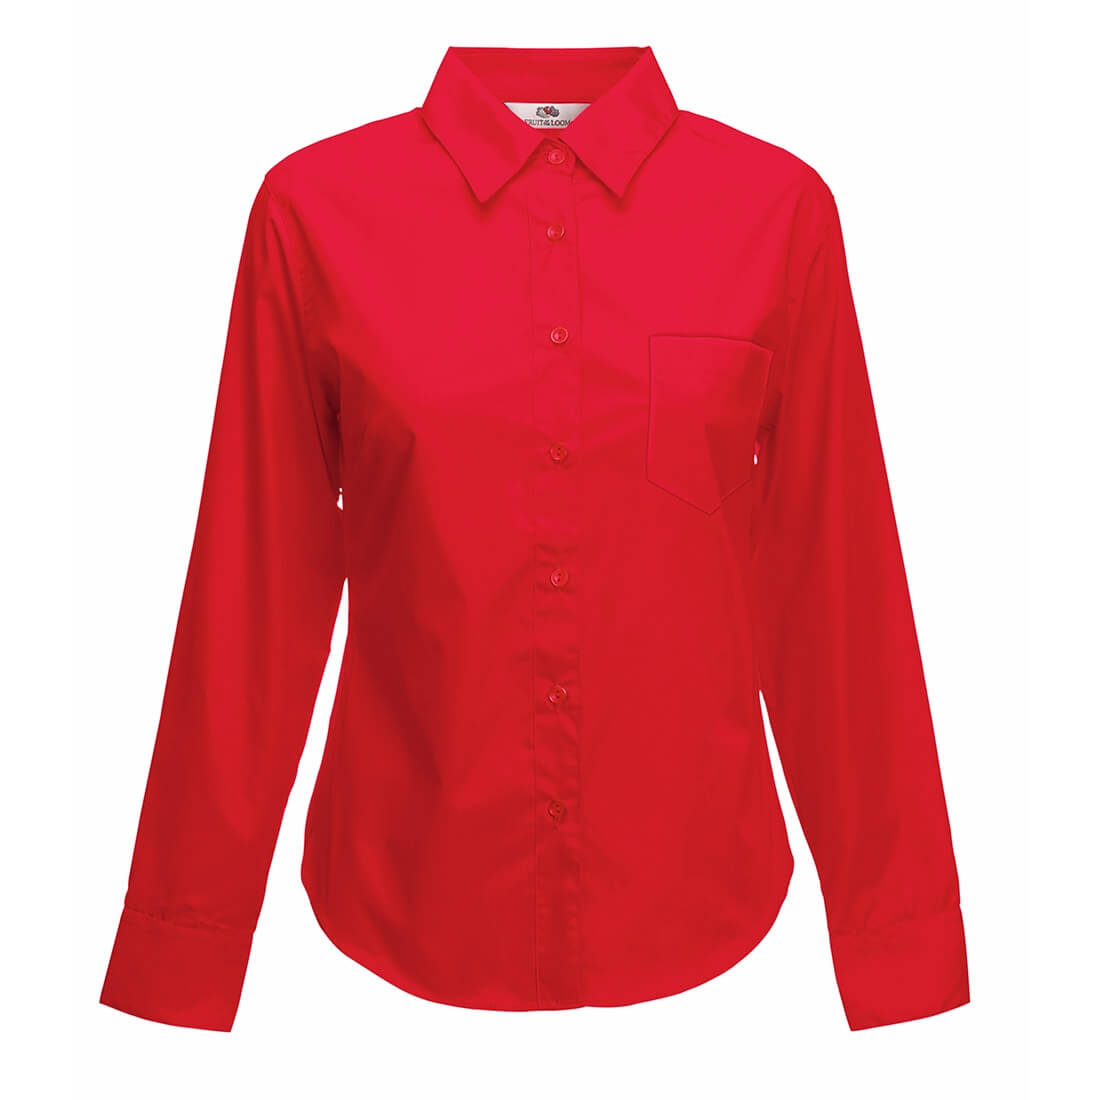 Lady-Fit Long Sleeve Poplin Shirt - Safetywear